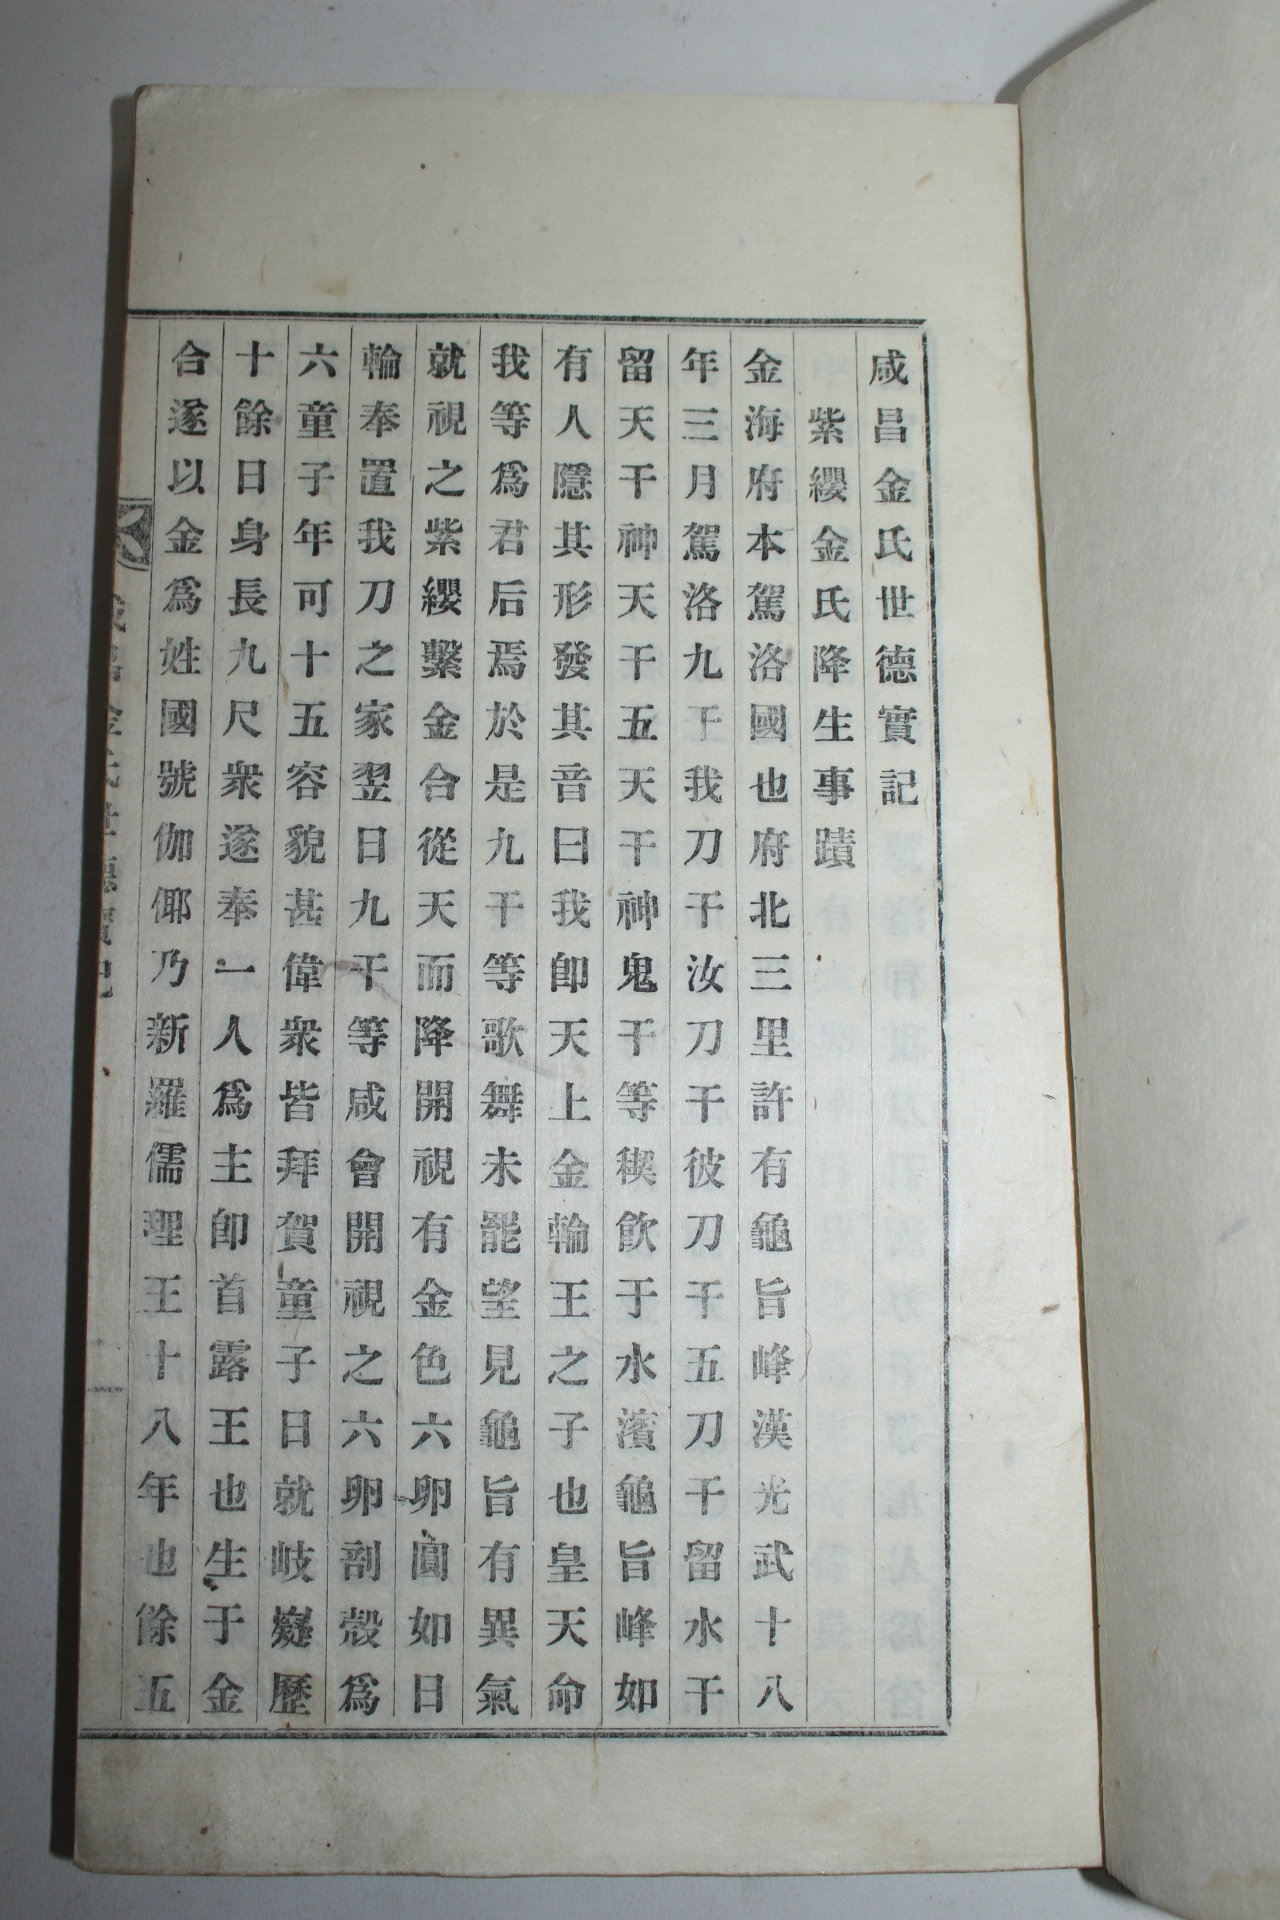 1934년 함창김씨세덕실기(咸昌金氏世德實紀) 1책완질